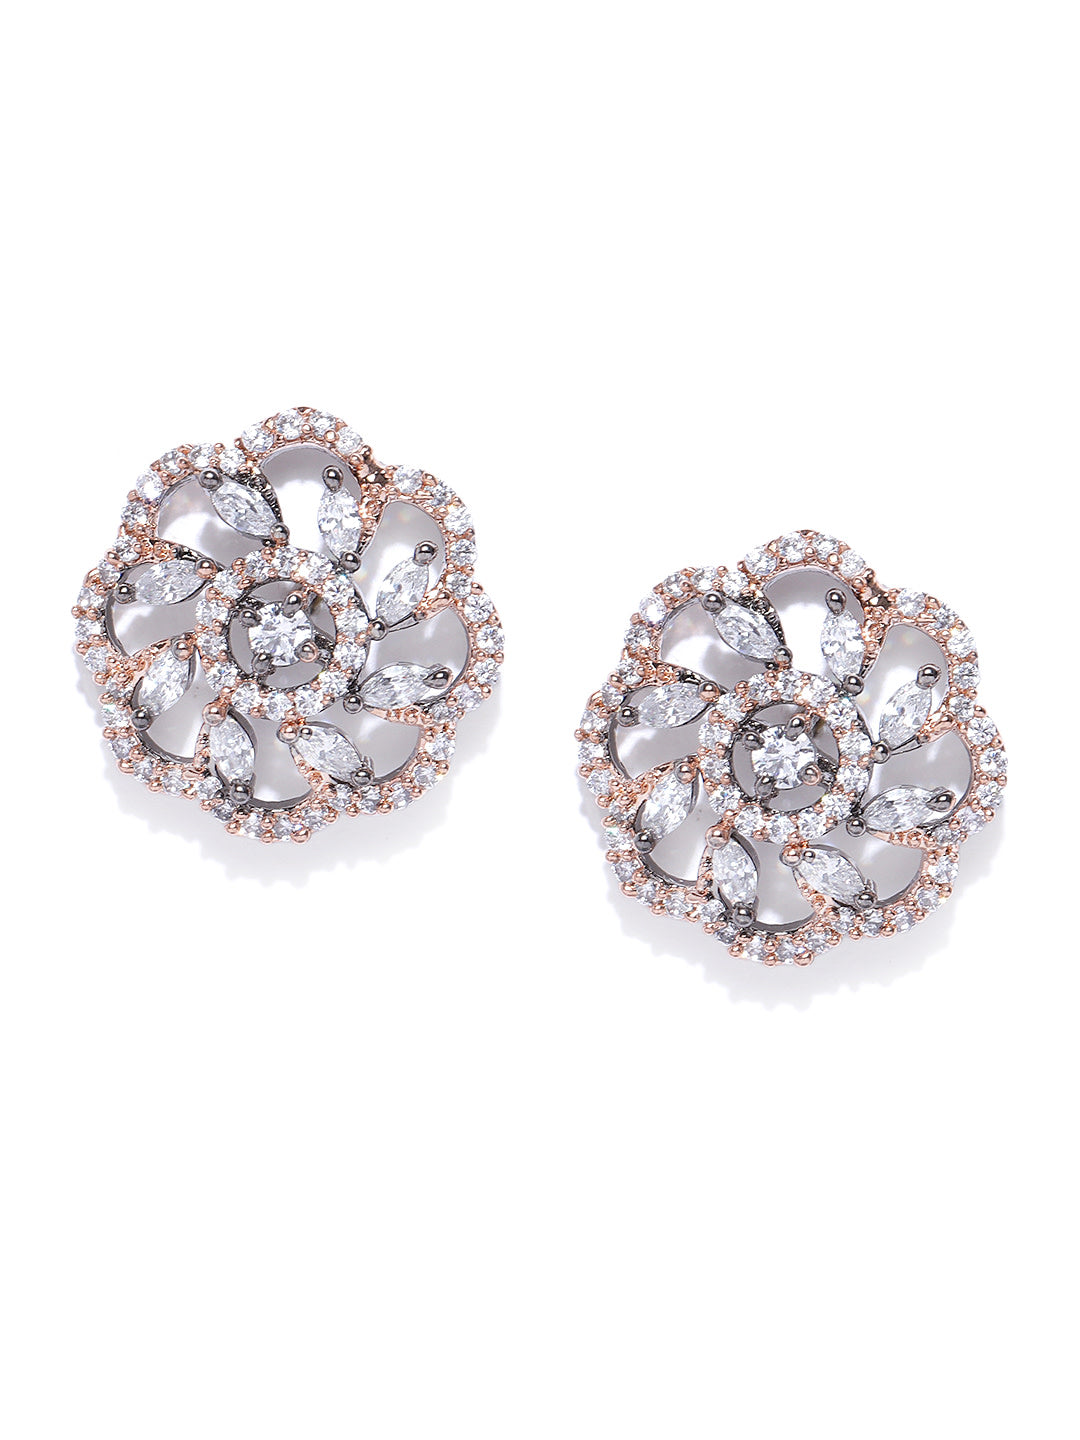 Gunmetal-Plated American Diamond Studded Floral Stud Earrings